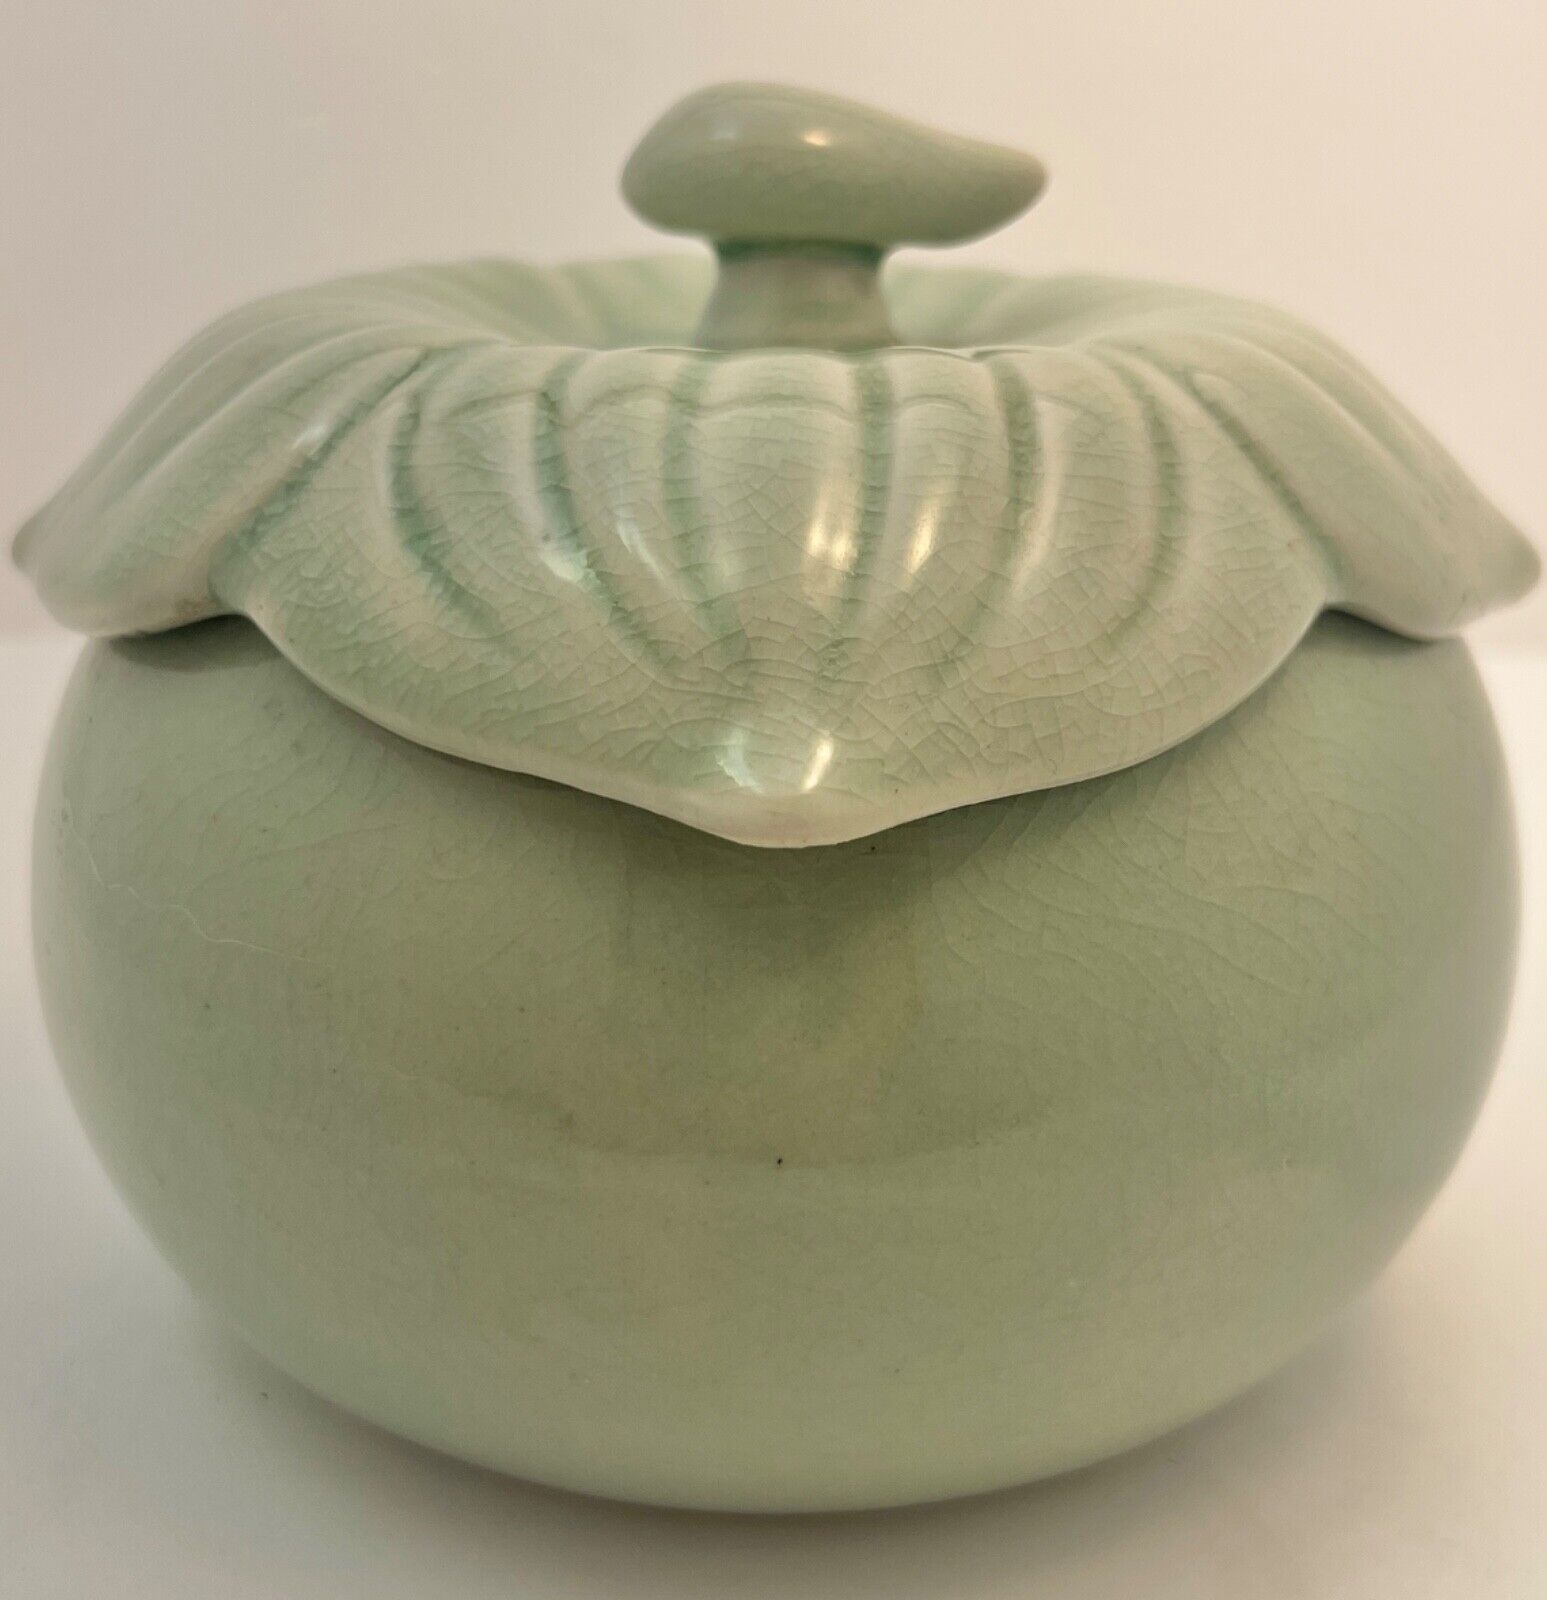 Celadon Lidded Round Jar With Leaf Design Lid with Little Stem Handle